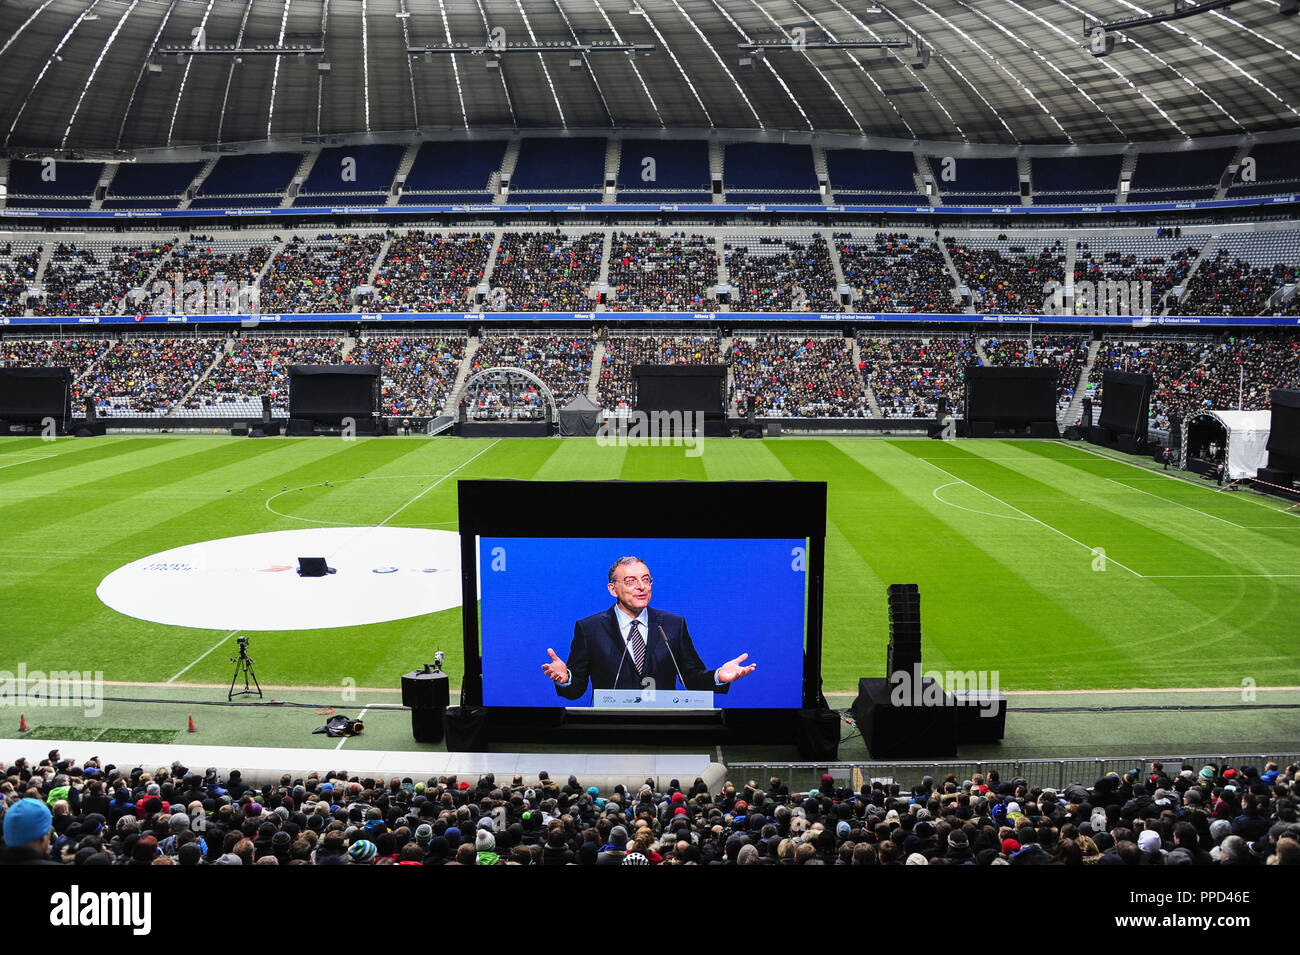 Como parte de la celebración del aniversario "Los próximos 100 años" en el 100° aniversario de la empresa de 35.000 empleados de BMW siga en el Allianz Arena, la transmisión en vivo de la ceremonia oficial de la Olympic Hall. En la imagen, la dirección del miembro de la junta de BMW Dr. Norbert Reithofer. Foto de stock